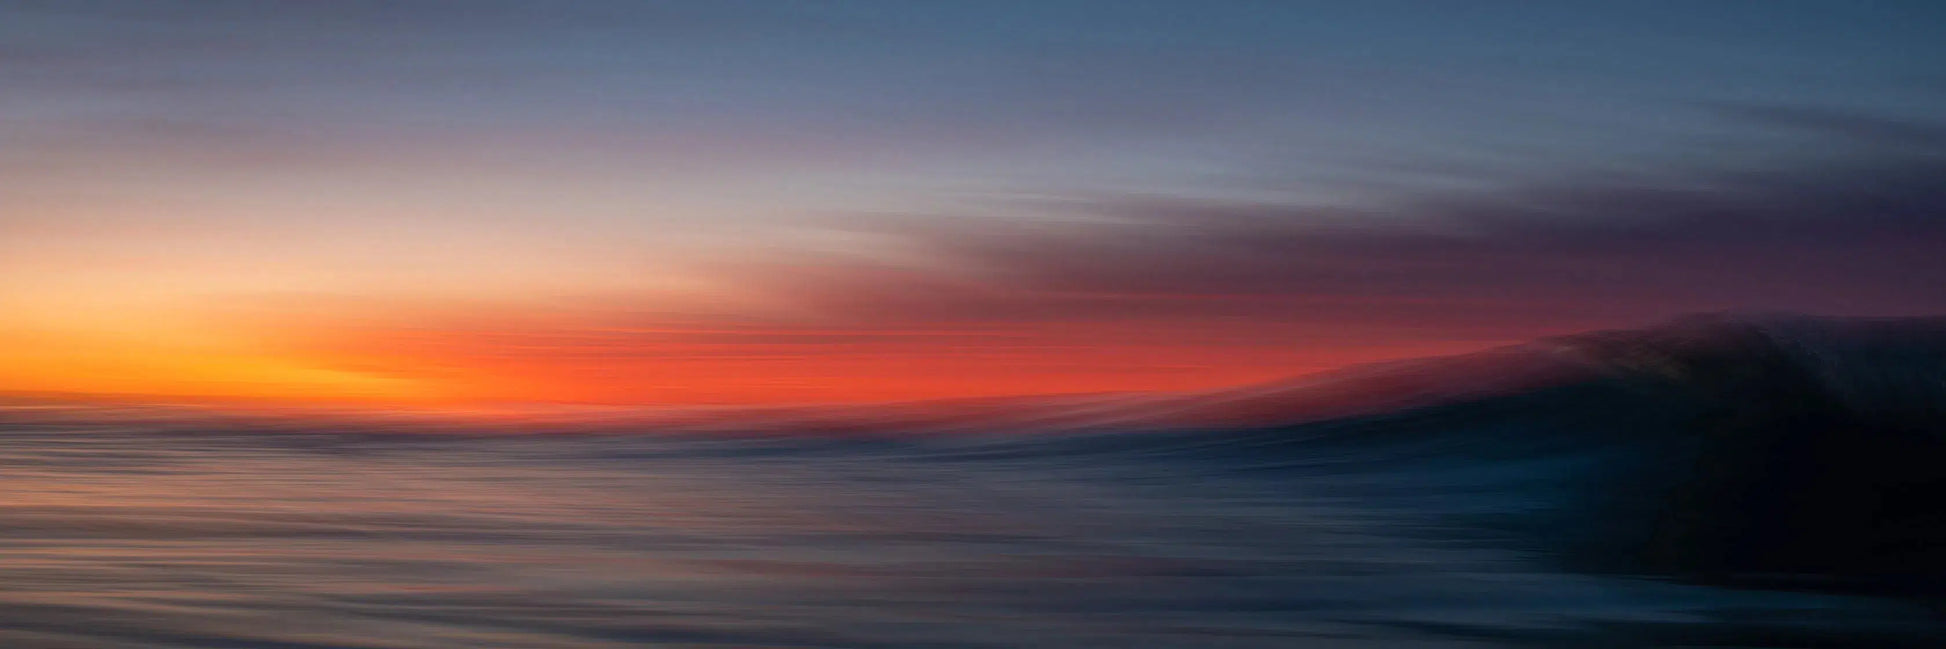 Sunset Panoramic 2, by Daniel Weiss-PurePhoto